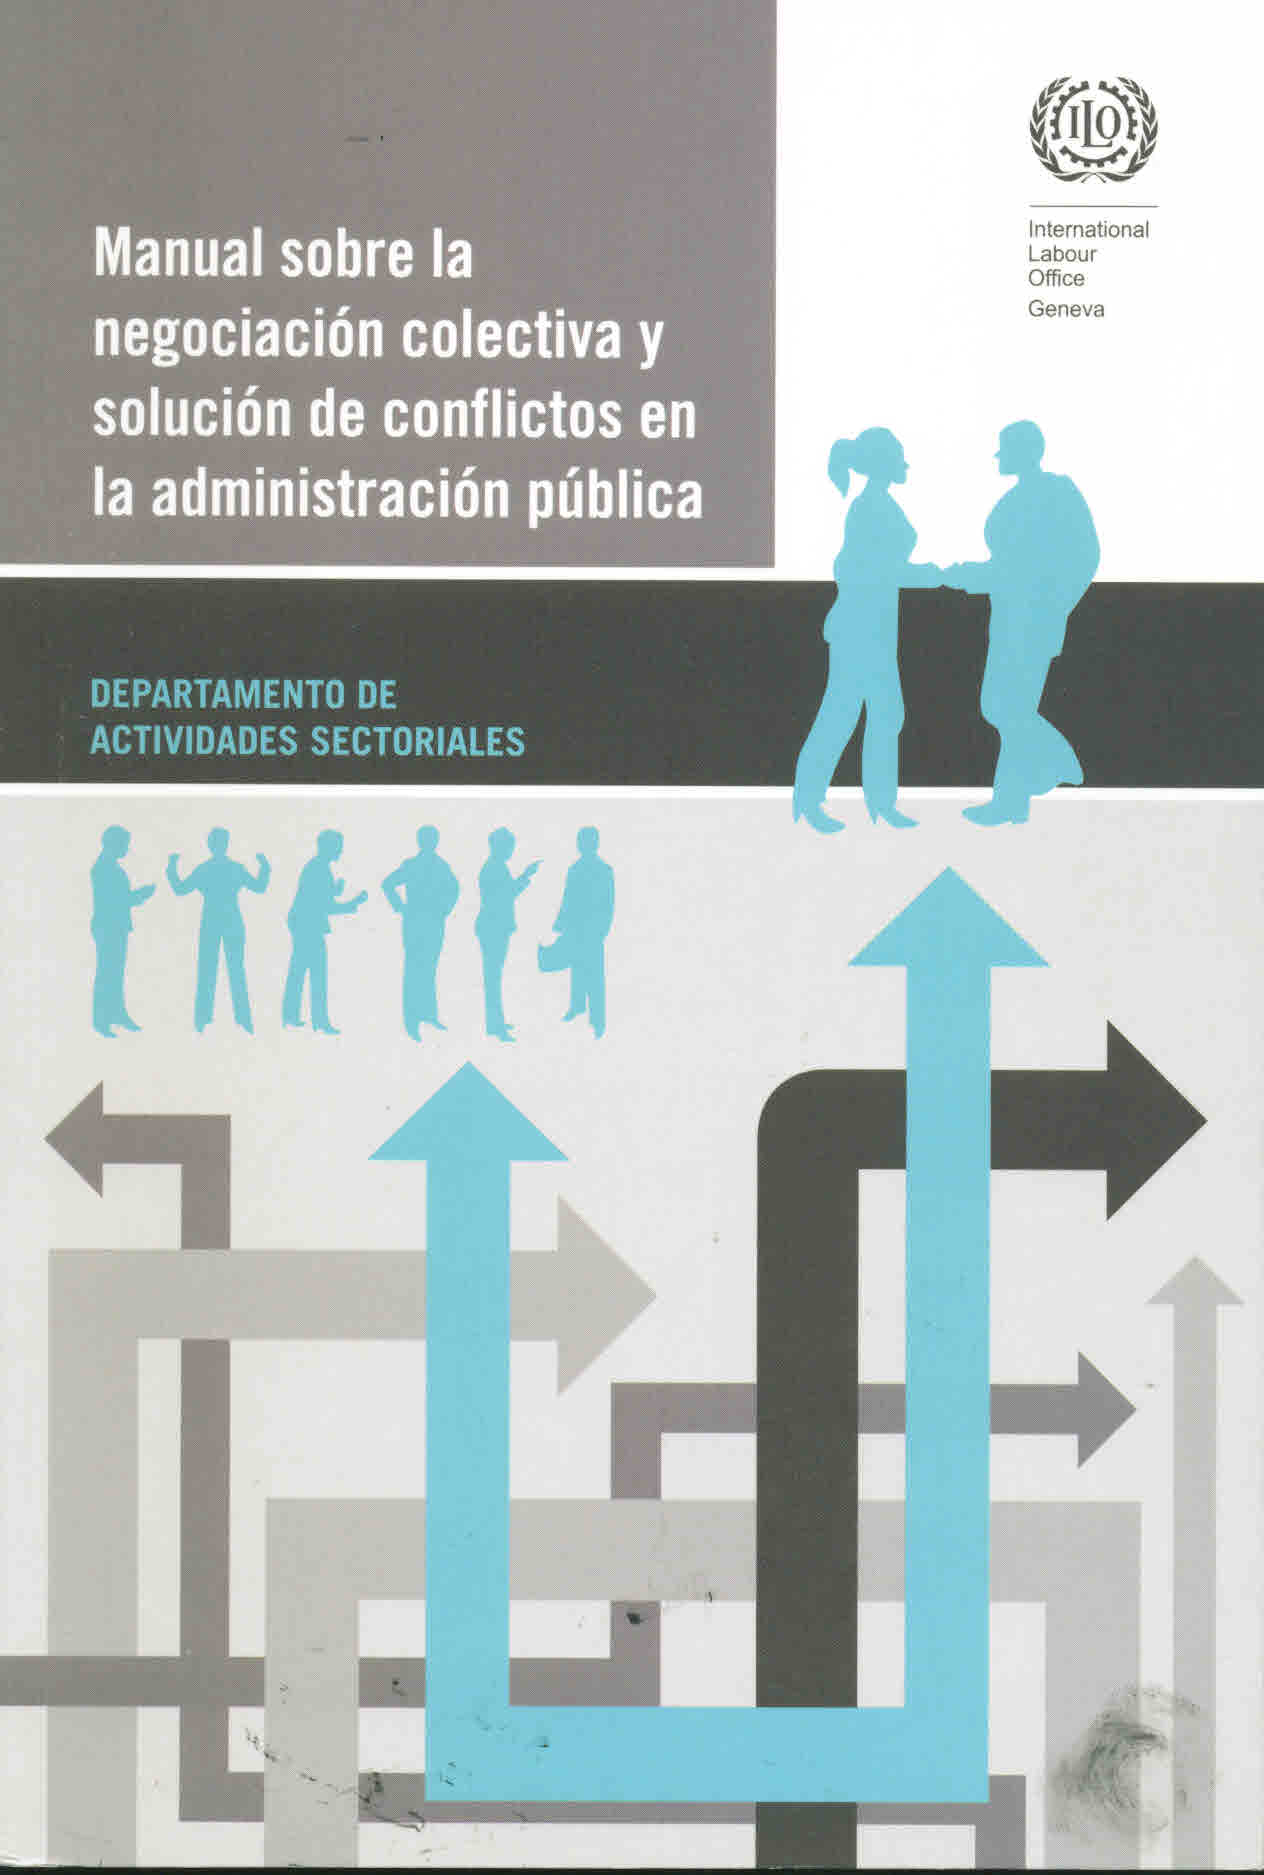 Manual sobre la negociación colectiva y solución de conflictos en la administración pública. Departamento de actividades sectoriales